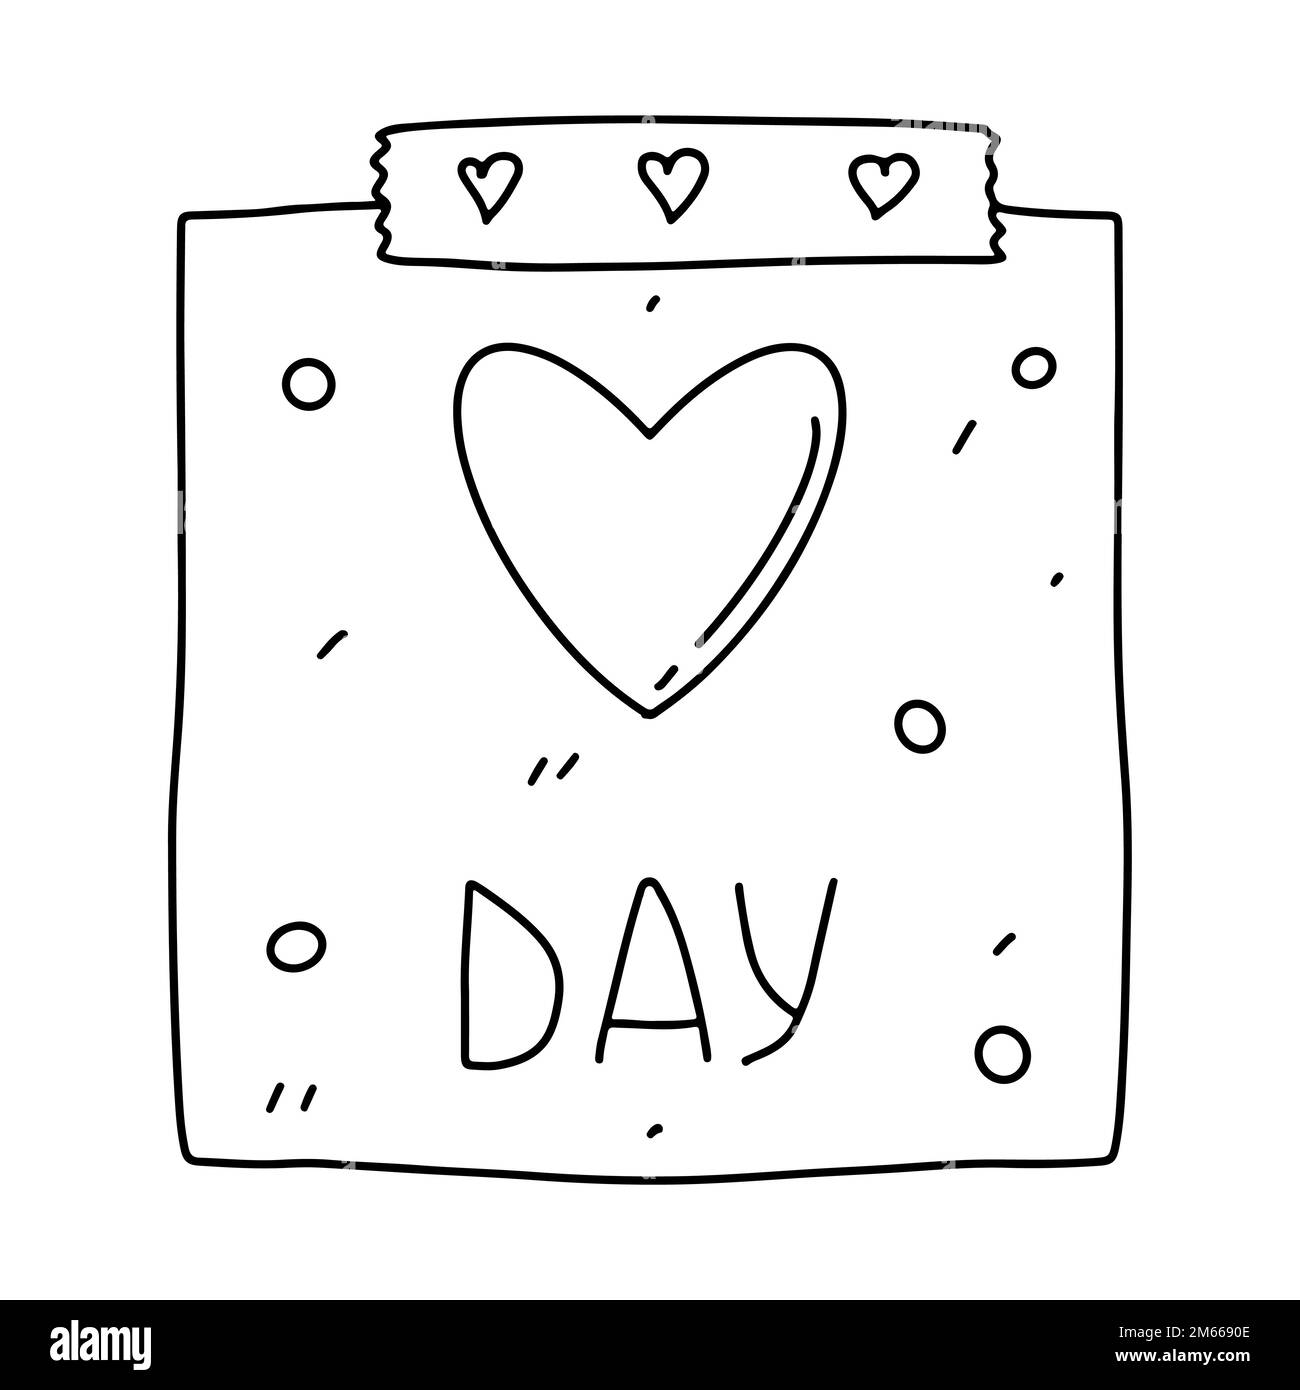 Valentinstag-Kalender. Februar 14. Vektorgrafik im handgezeichneten Doodle-Stil. Isoliert auf weißem Hintergrund Stock Vektor